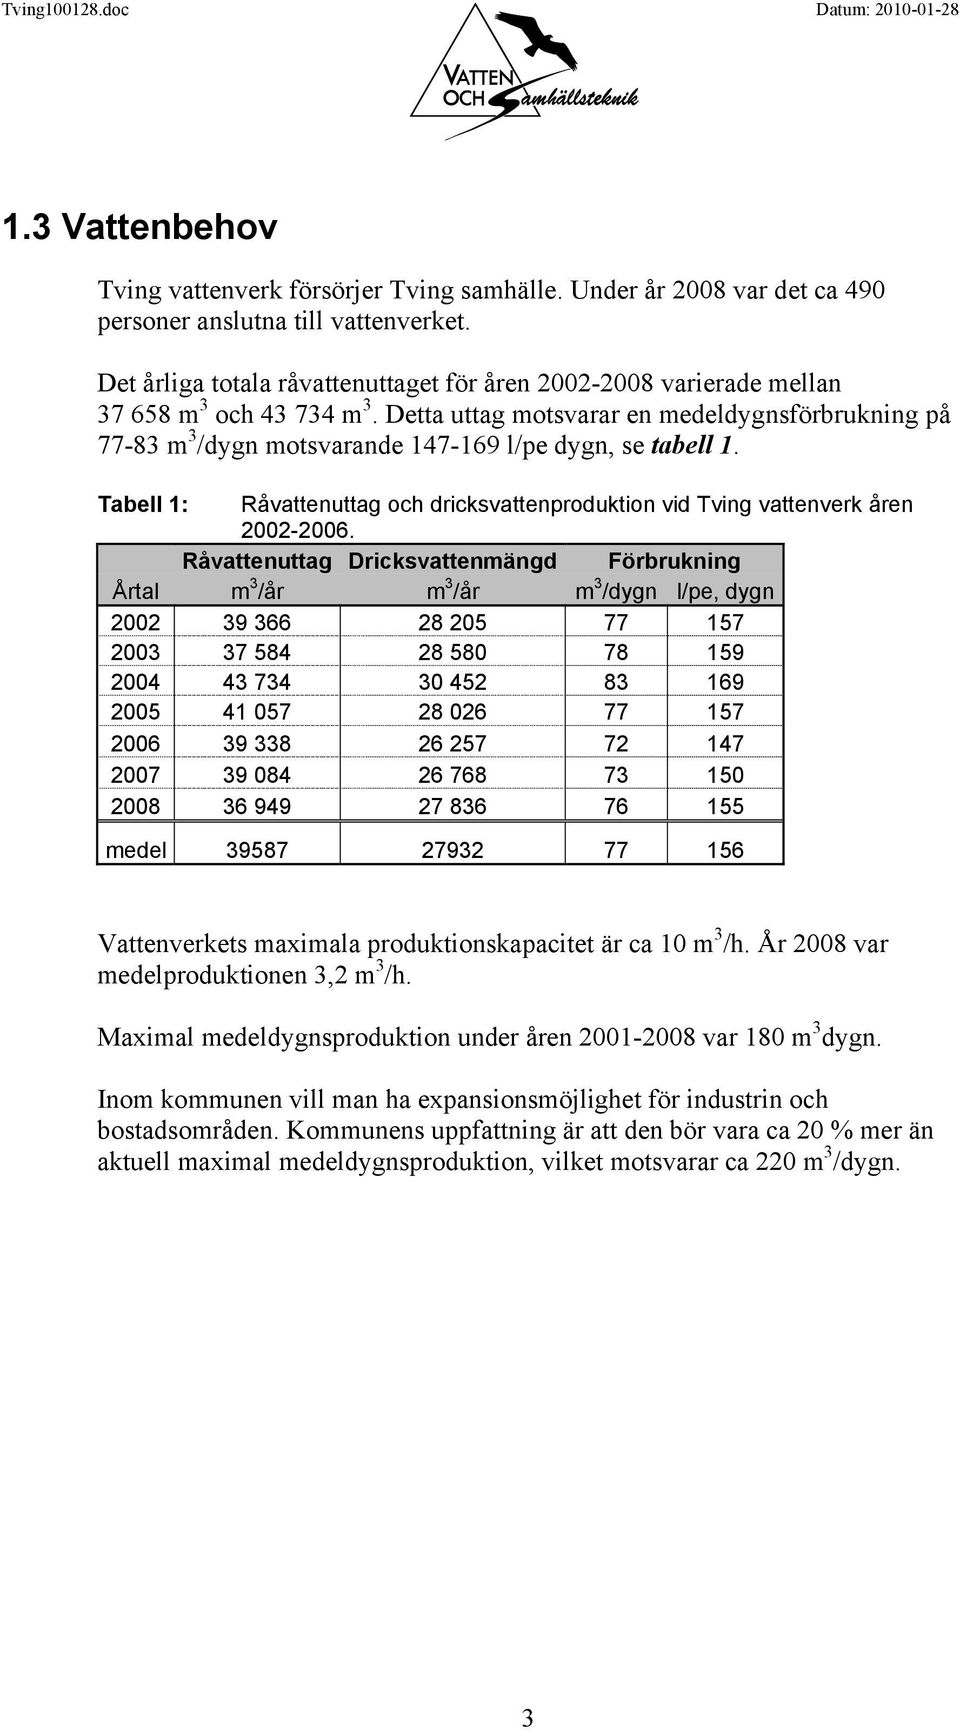 Detta uttag motsvarar en medeldygnsförbrukning på 77-83 m 3 /dygn motsvarande 147-169 l/pe dygn, se tabell 1. Tabell 1: Råvattenuttag och dricksvattenproduktion vid Tving vattenverk åren 2002-2006.